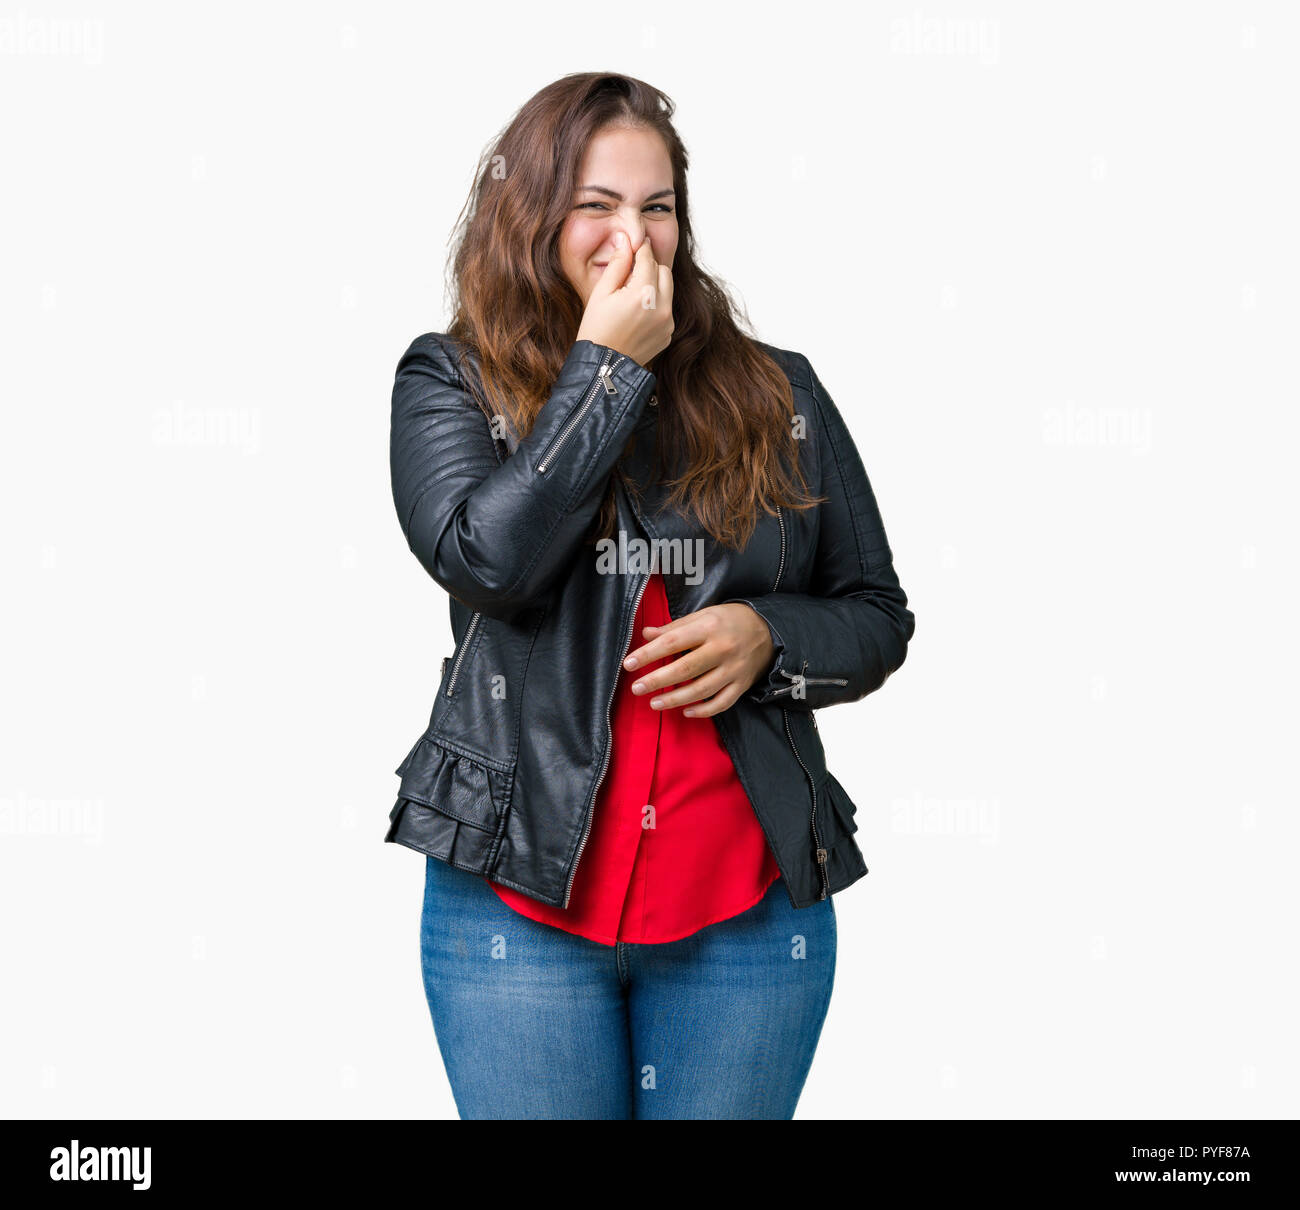 Schöne Übergrößen junge Frau trägt einen Mode Leder Jacke über isolierte  Hintergrund riechen etwas stinkig und ekelhaft, unerträglichen Geruch  Stockfotografie - Alamy